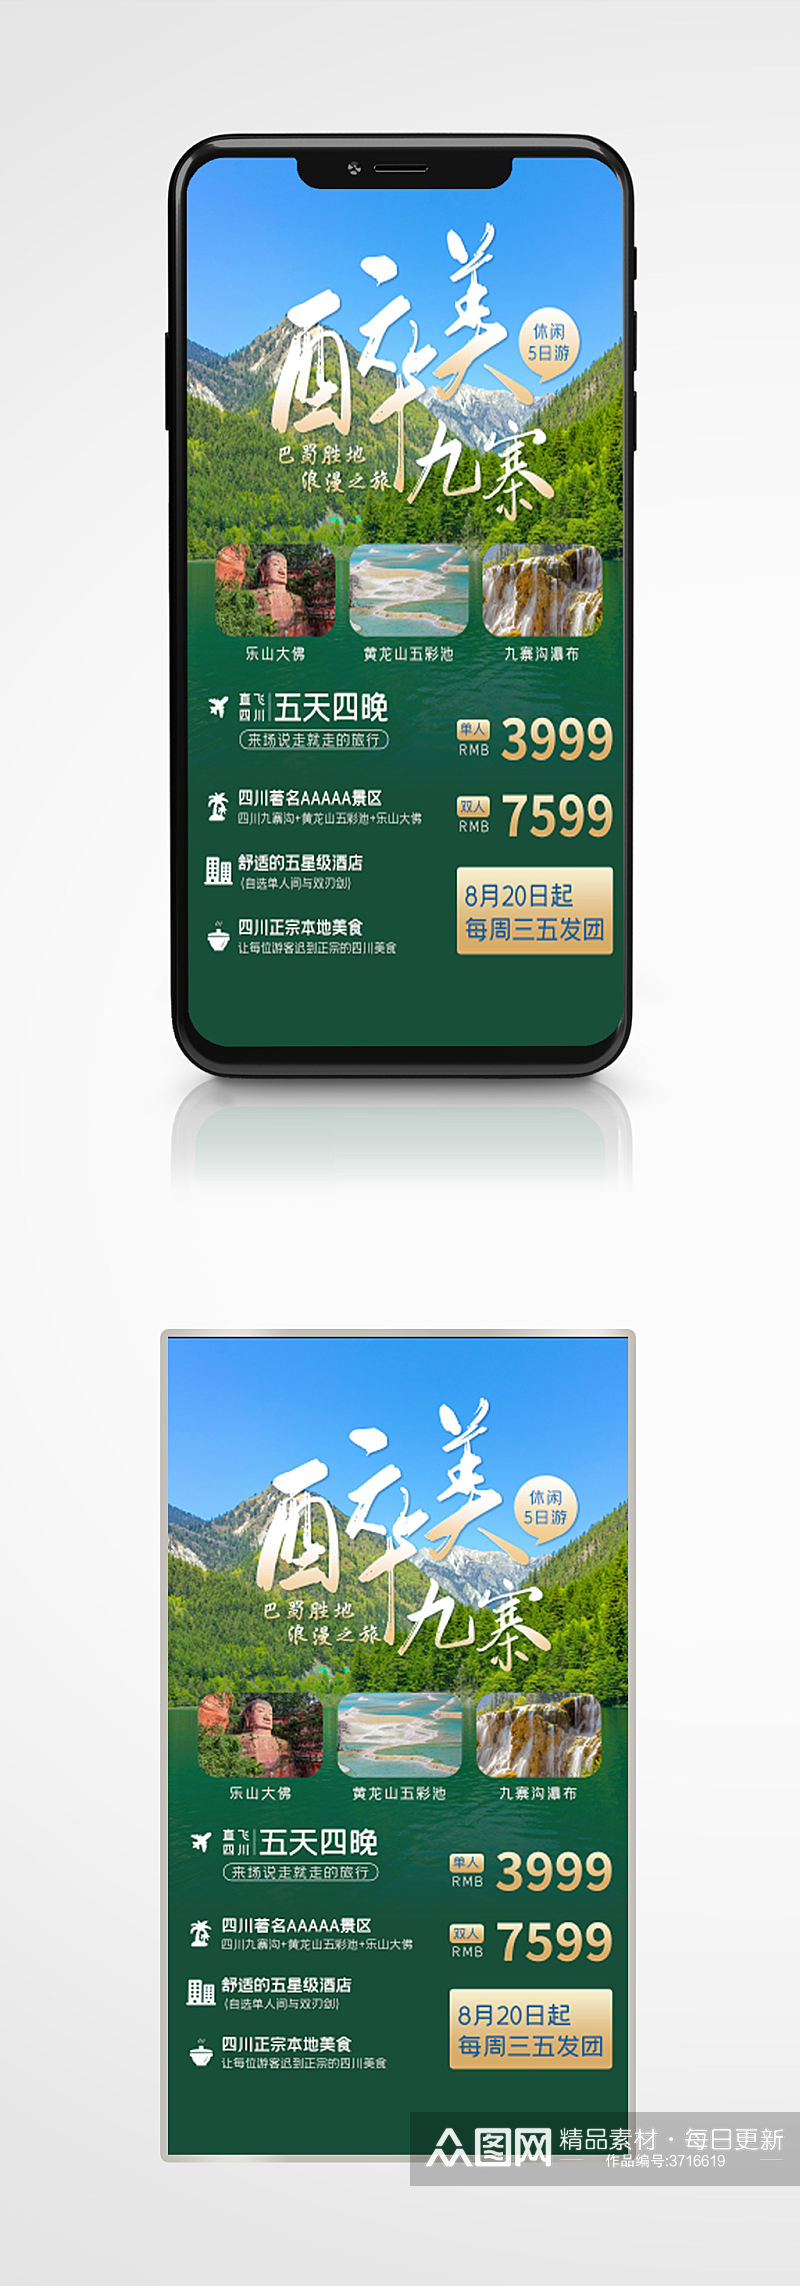 简约创意新媒体九寨沟旅游手机海报绿色素材